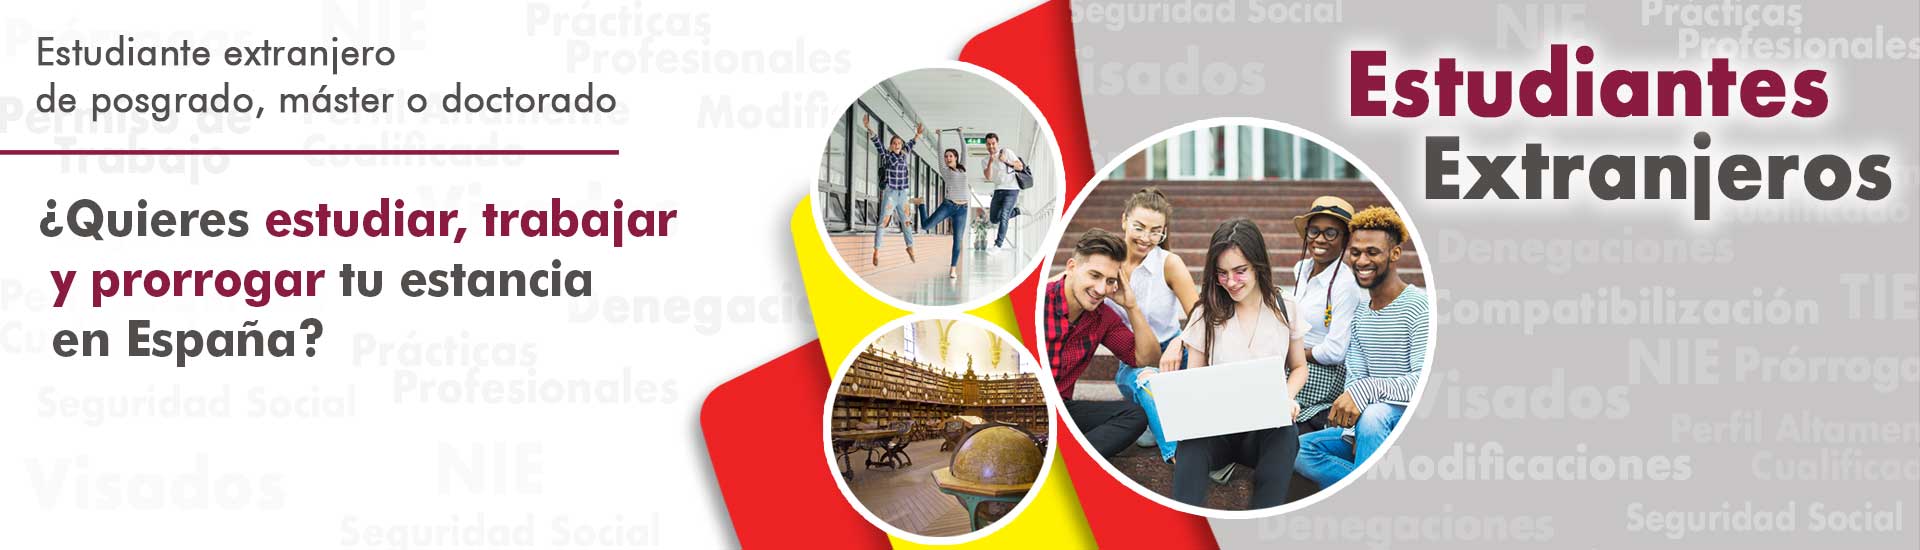 Estudiantes extranjeros residencia España Habeas Legal - Abogados Internacionales especializados en Extranjería, Inmigración y Laboral_respaldo